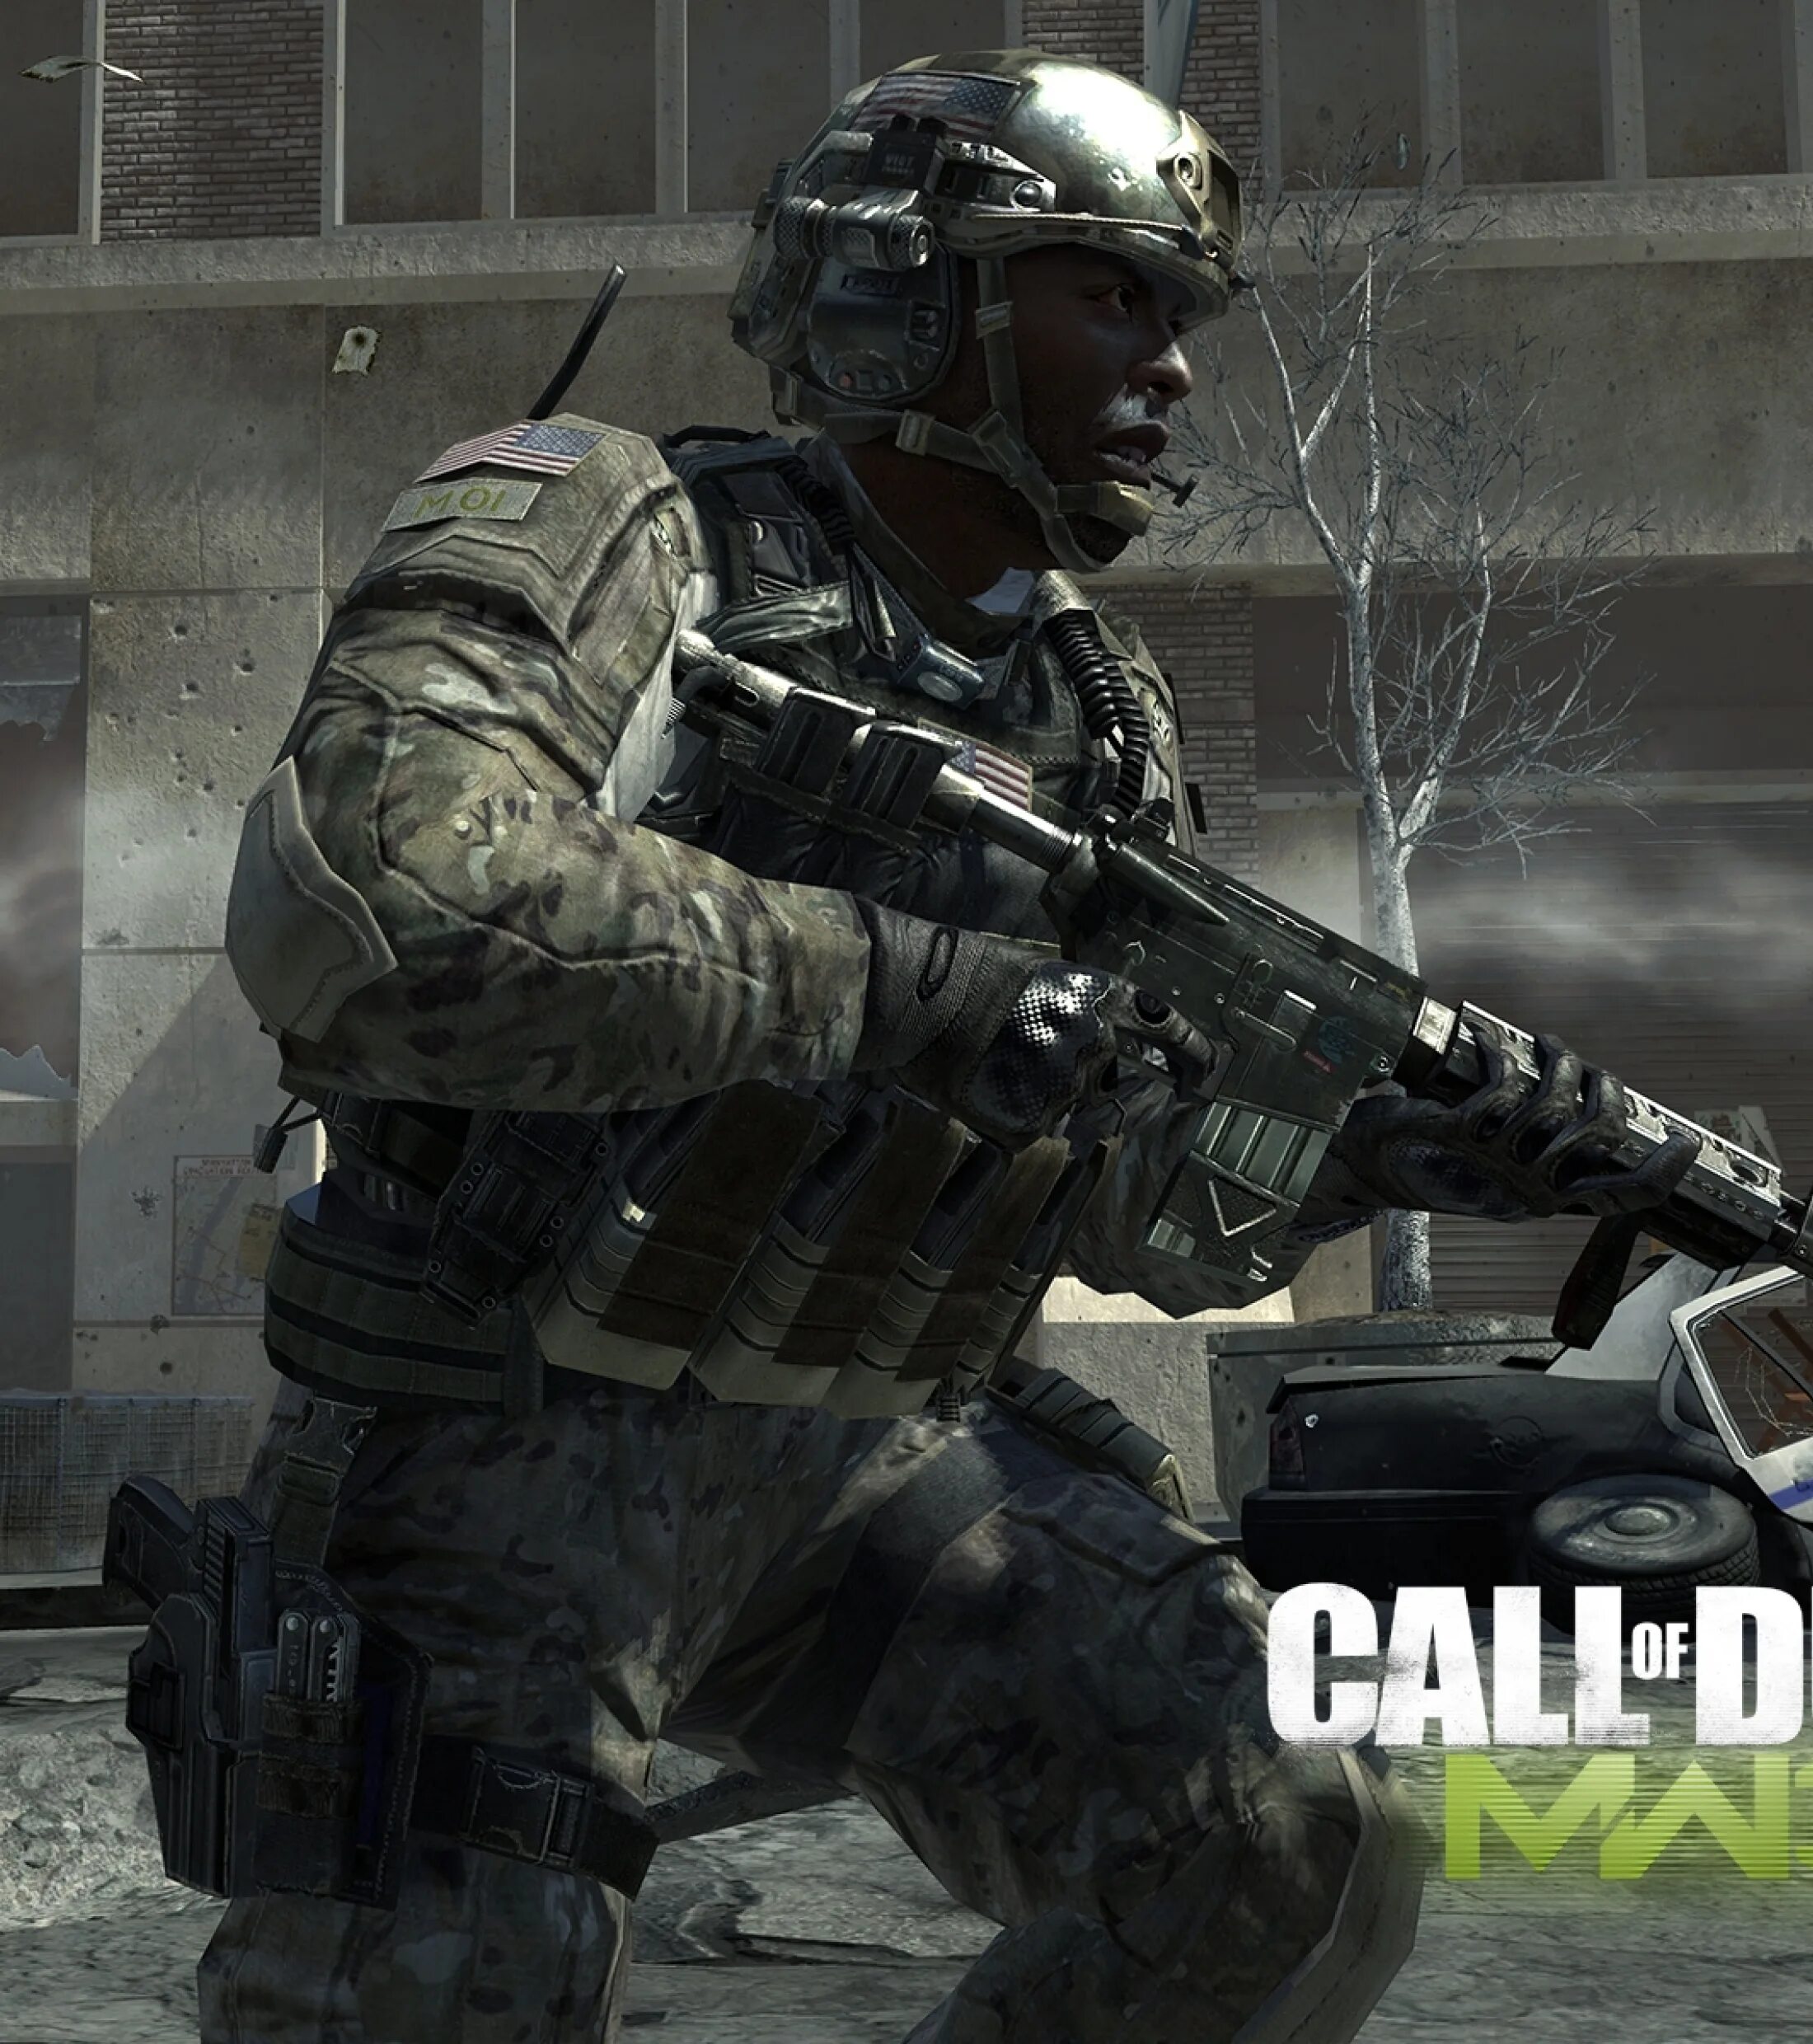 Купить калавдюти. Cod 4 Modern Warfare 3. Call of Duty: Modern Warfare 3. Cod Modern Warfare 3. Кал оф дути Модерн варфейр 3.